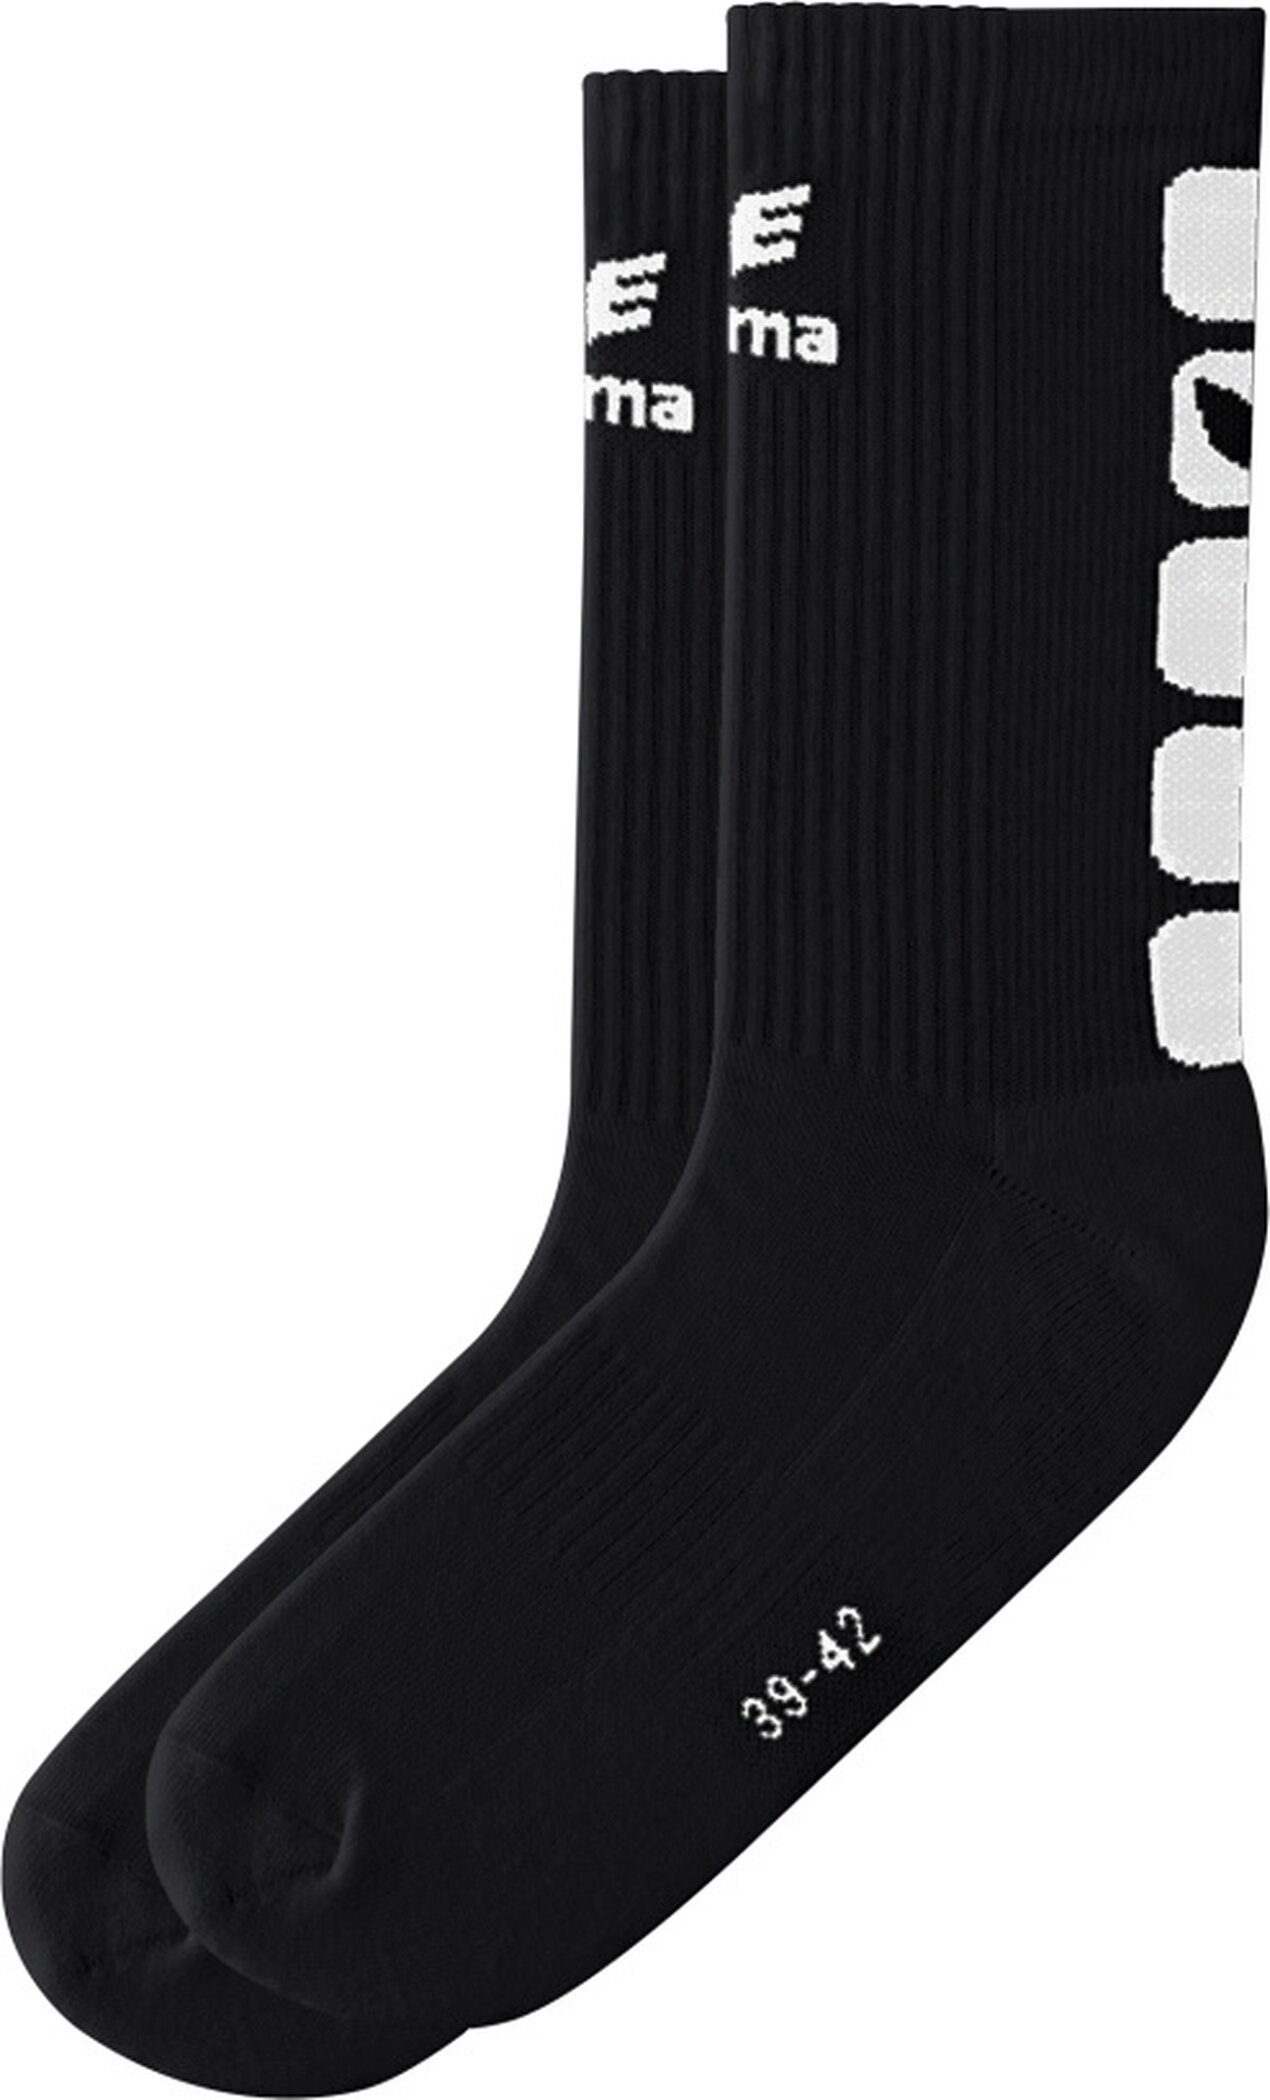 Erima Sportsocken 5-CUBES socks black/white